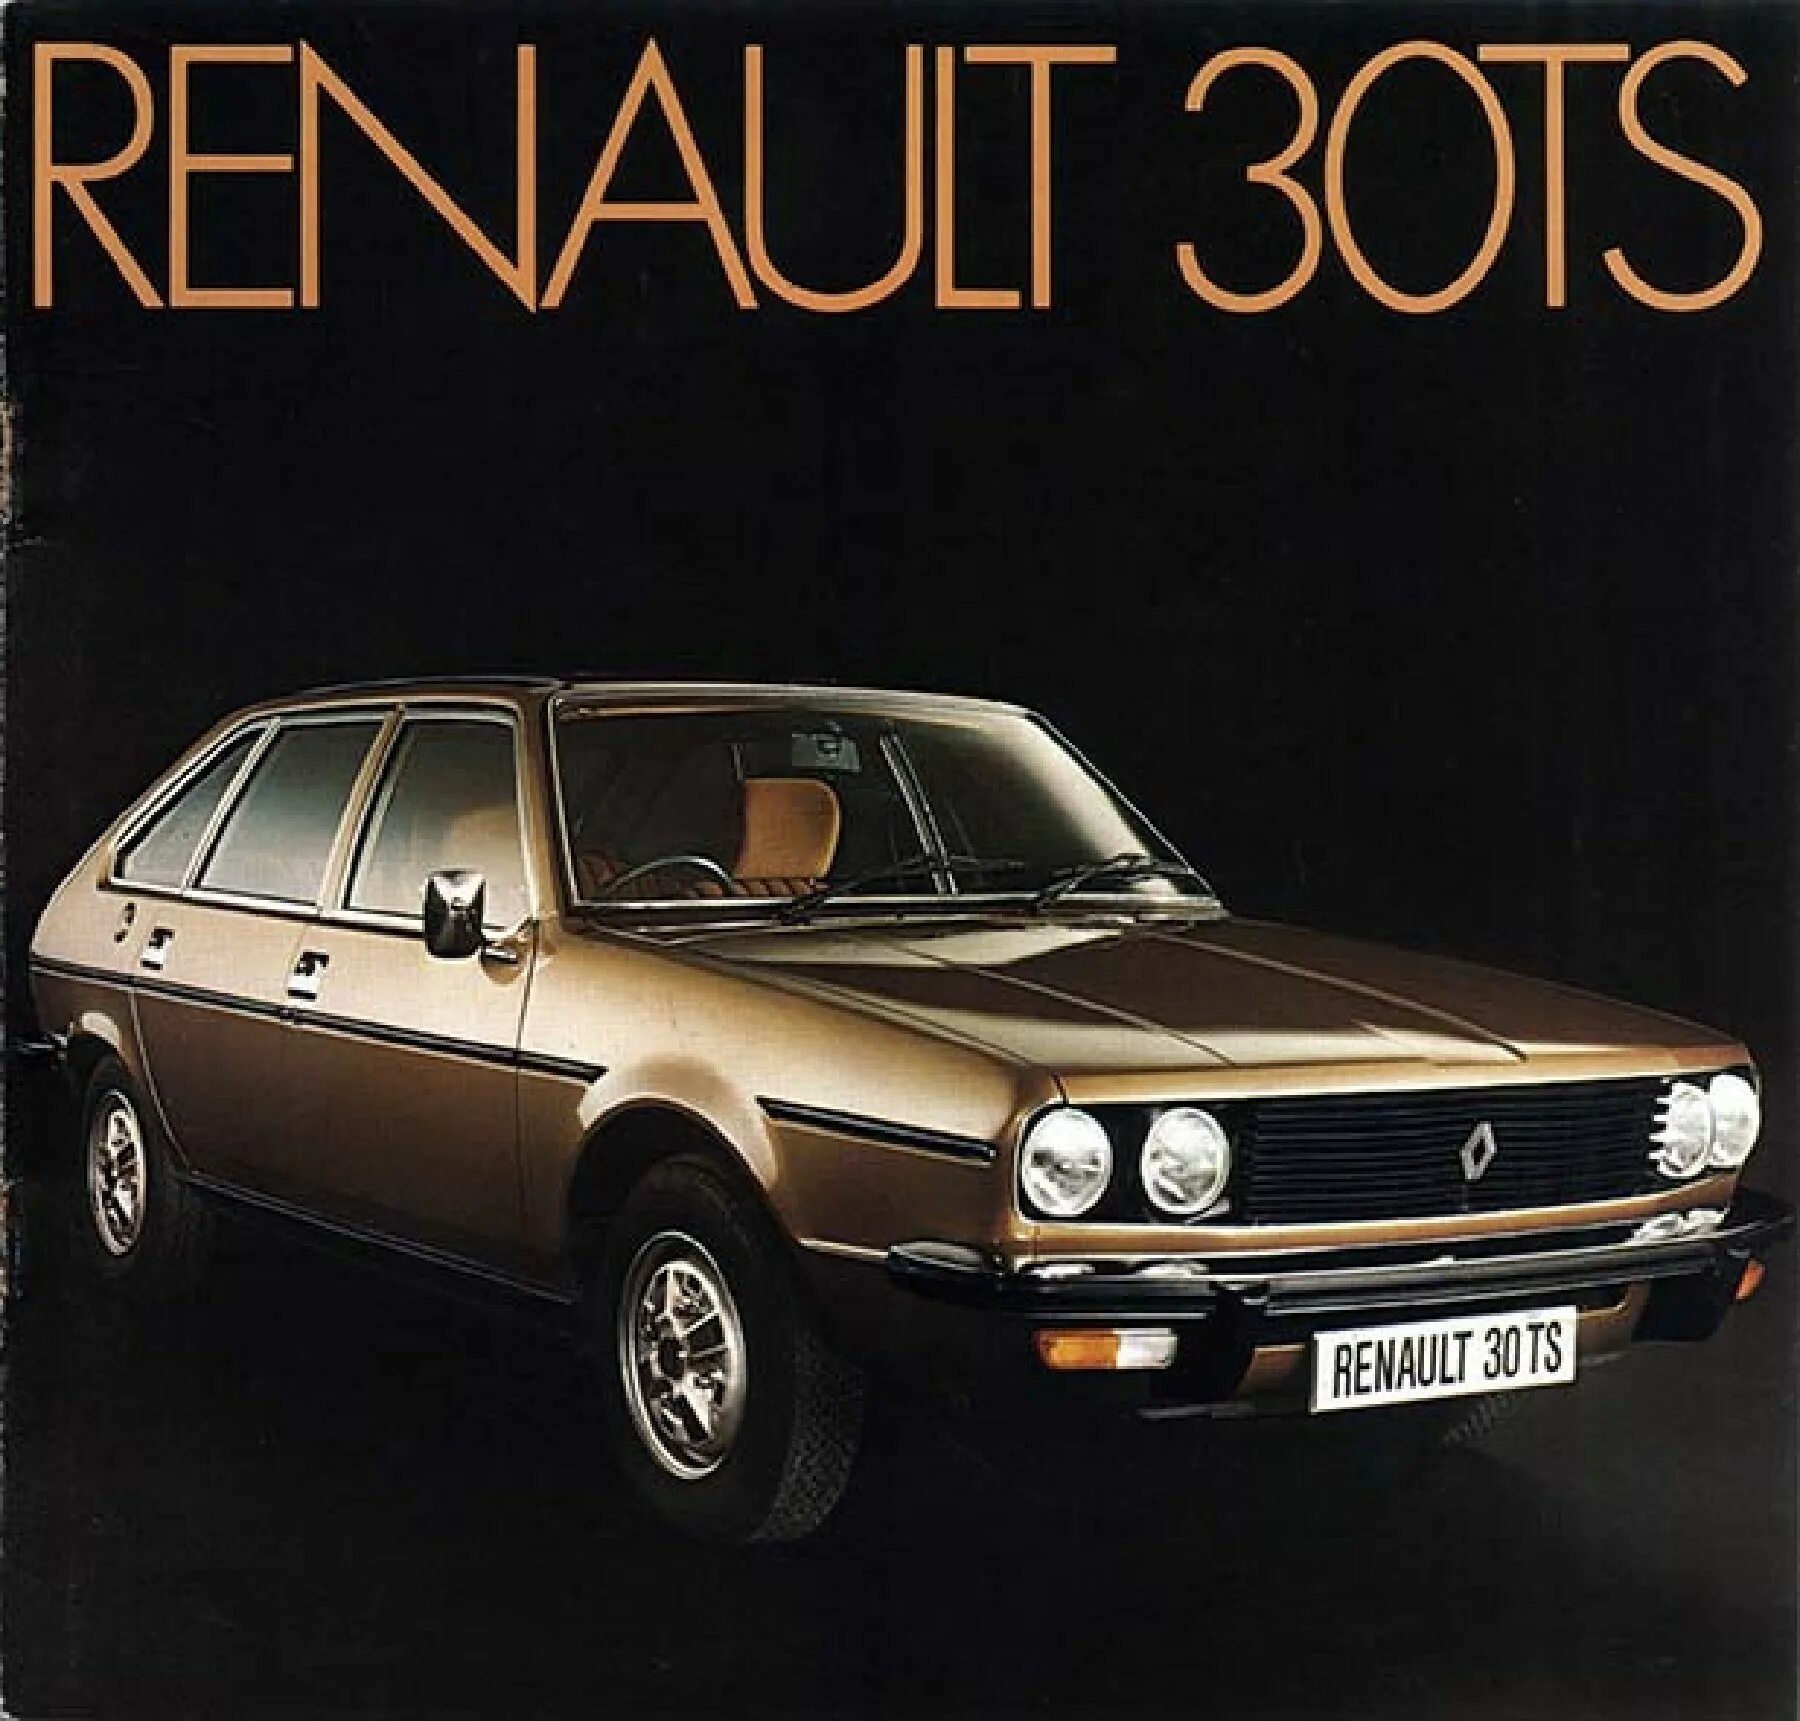 Renault 30. 1976 Renault 30 TS. Рено 30 1975. Рено 1975. Fasa-Renault.